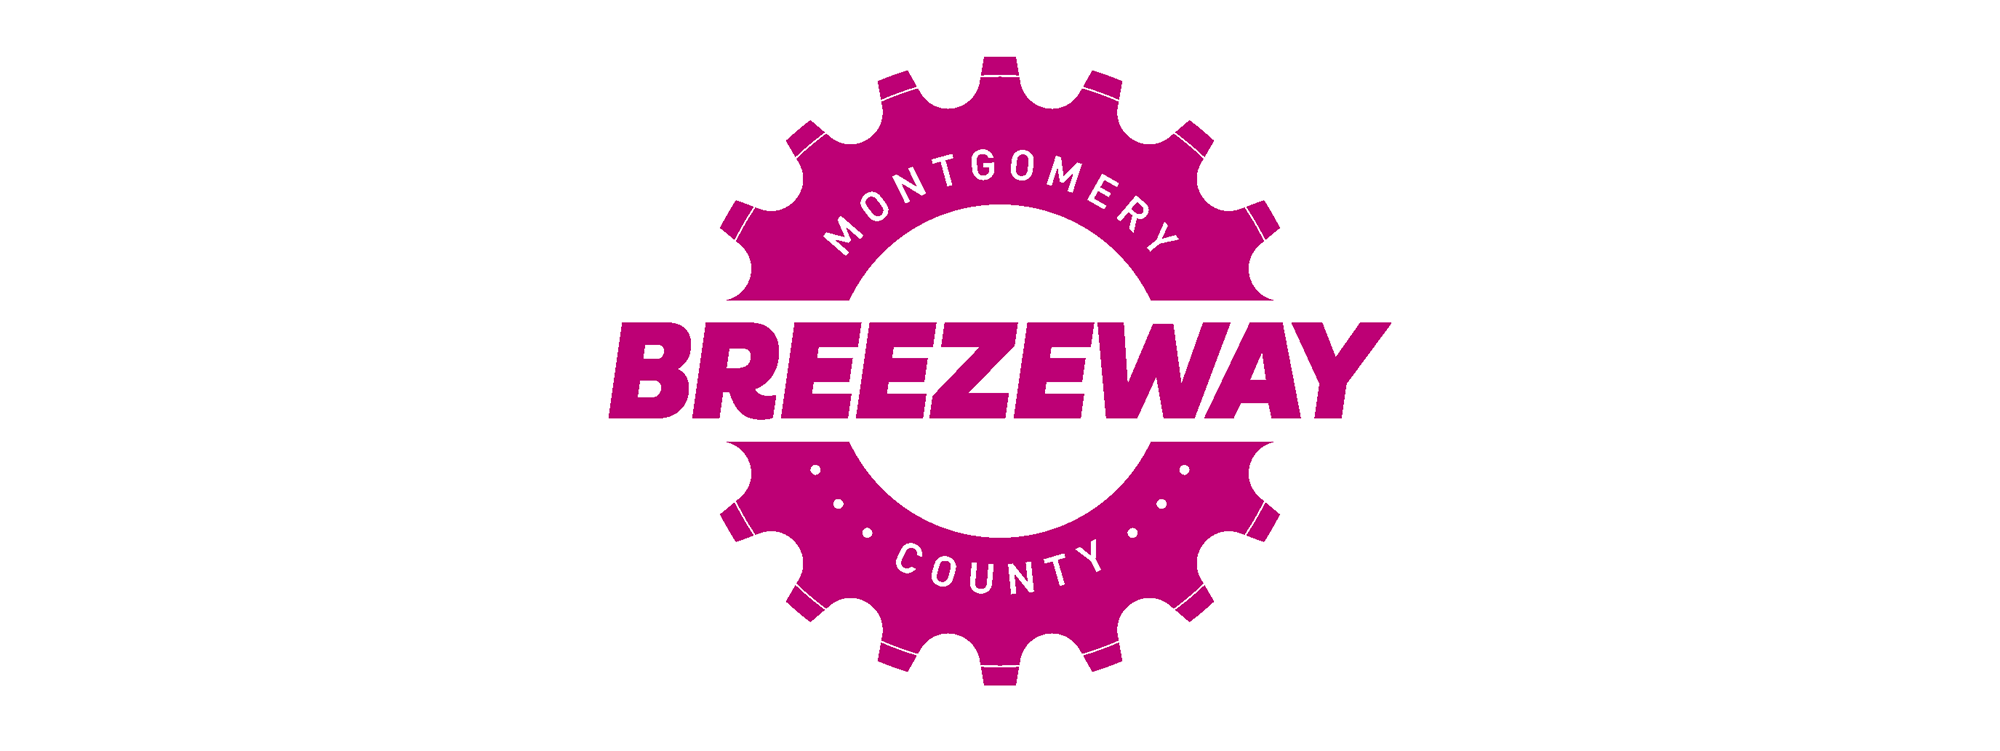 Montgomery County Breezeway with gear logo